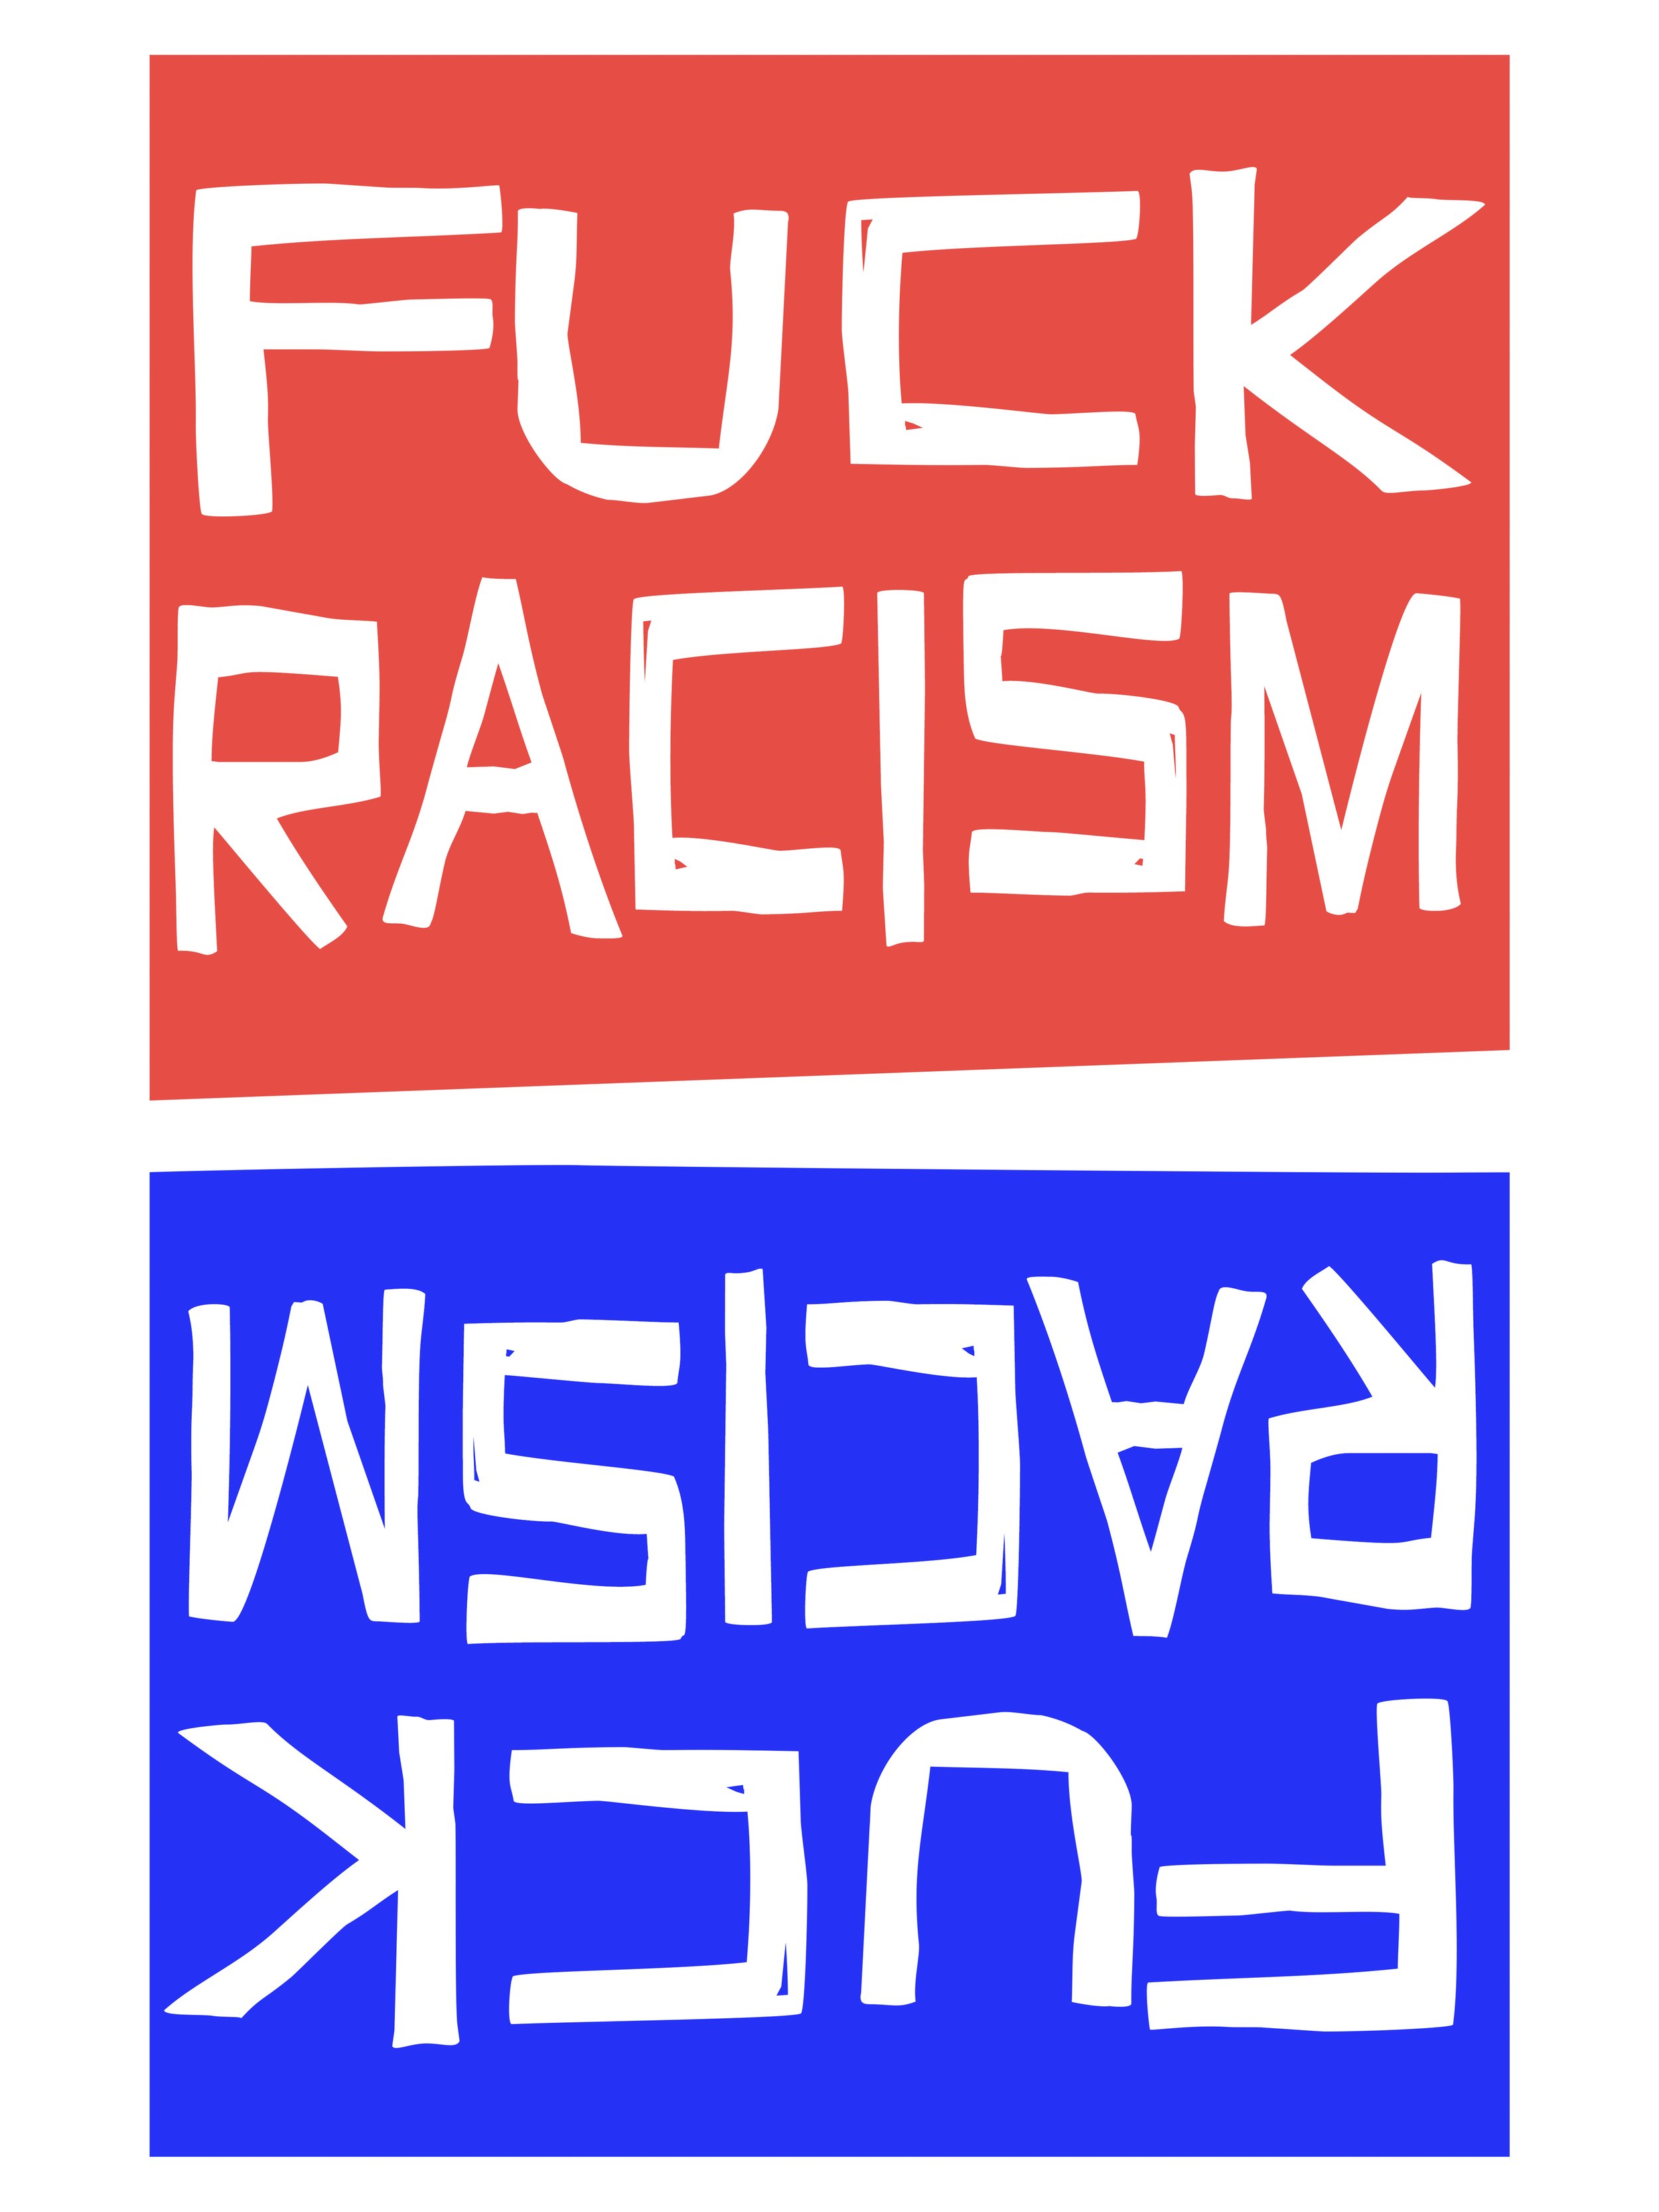 Fuck Racism